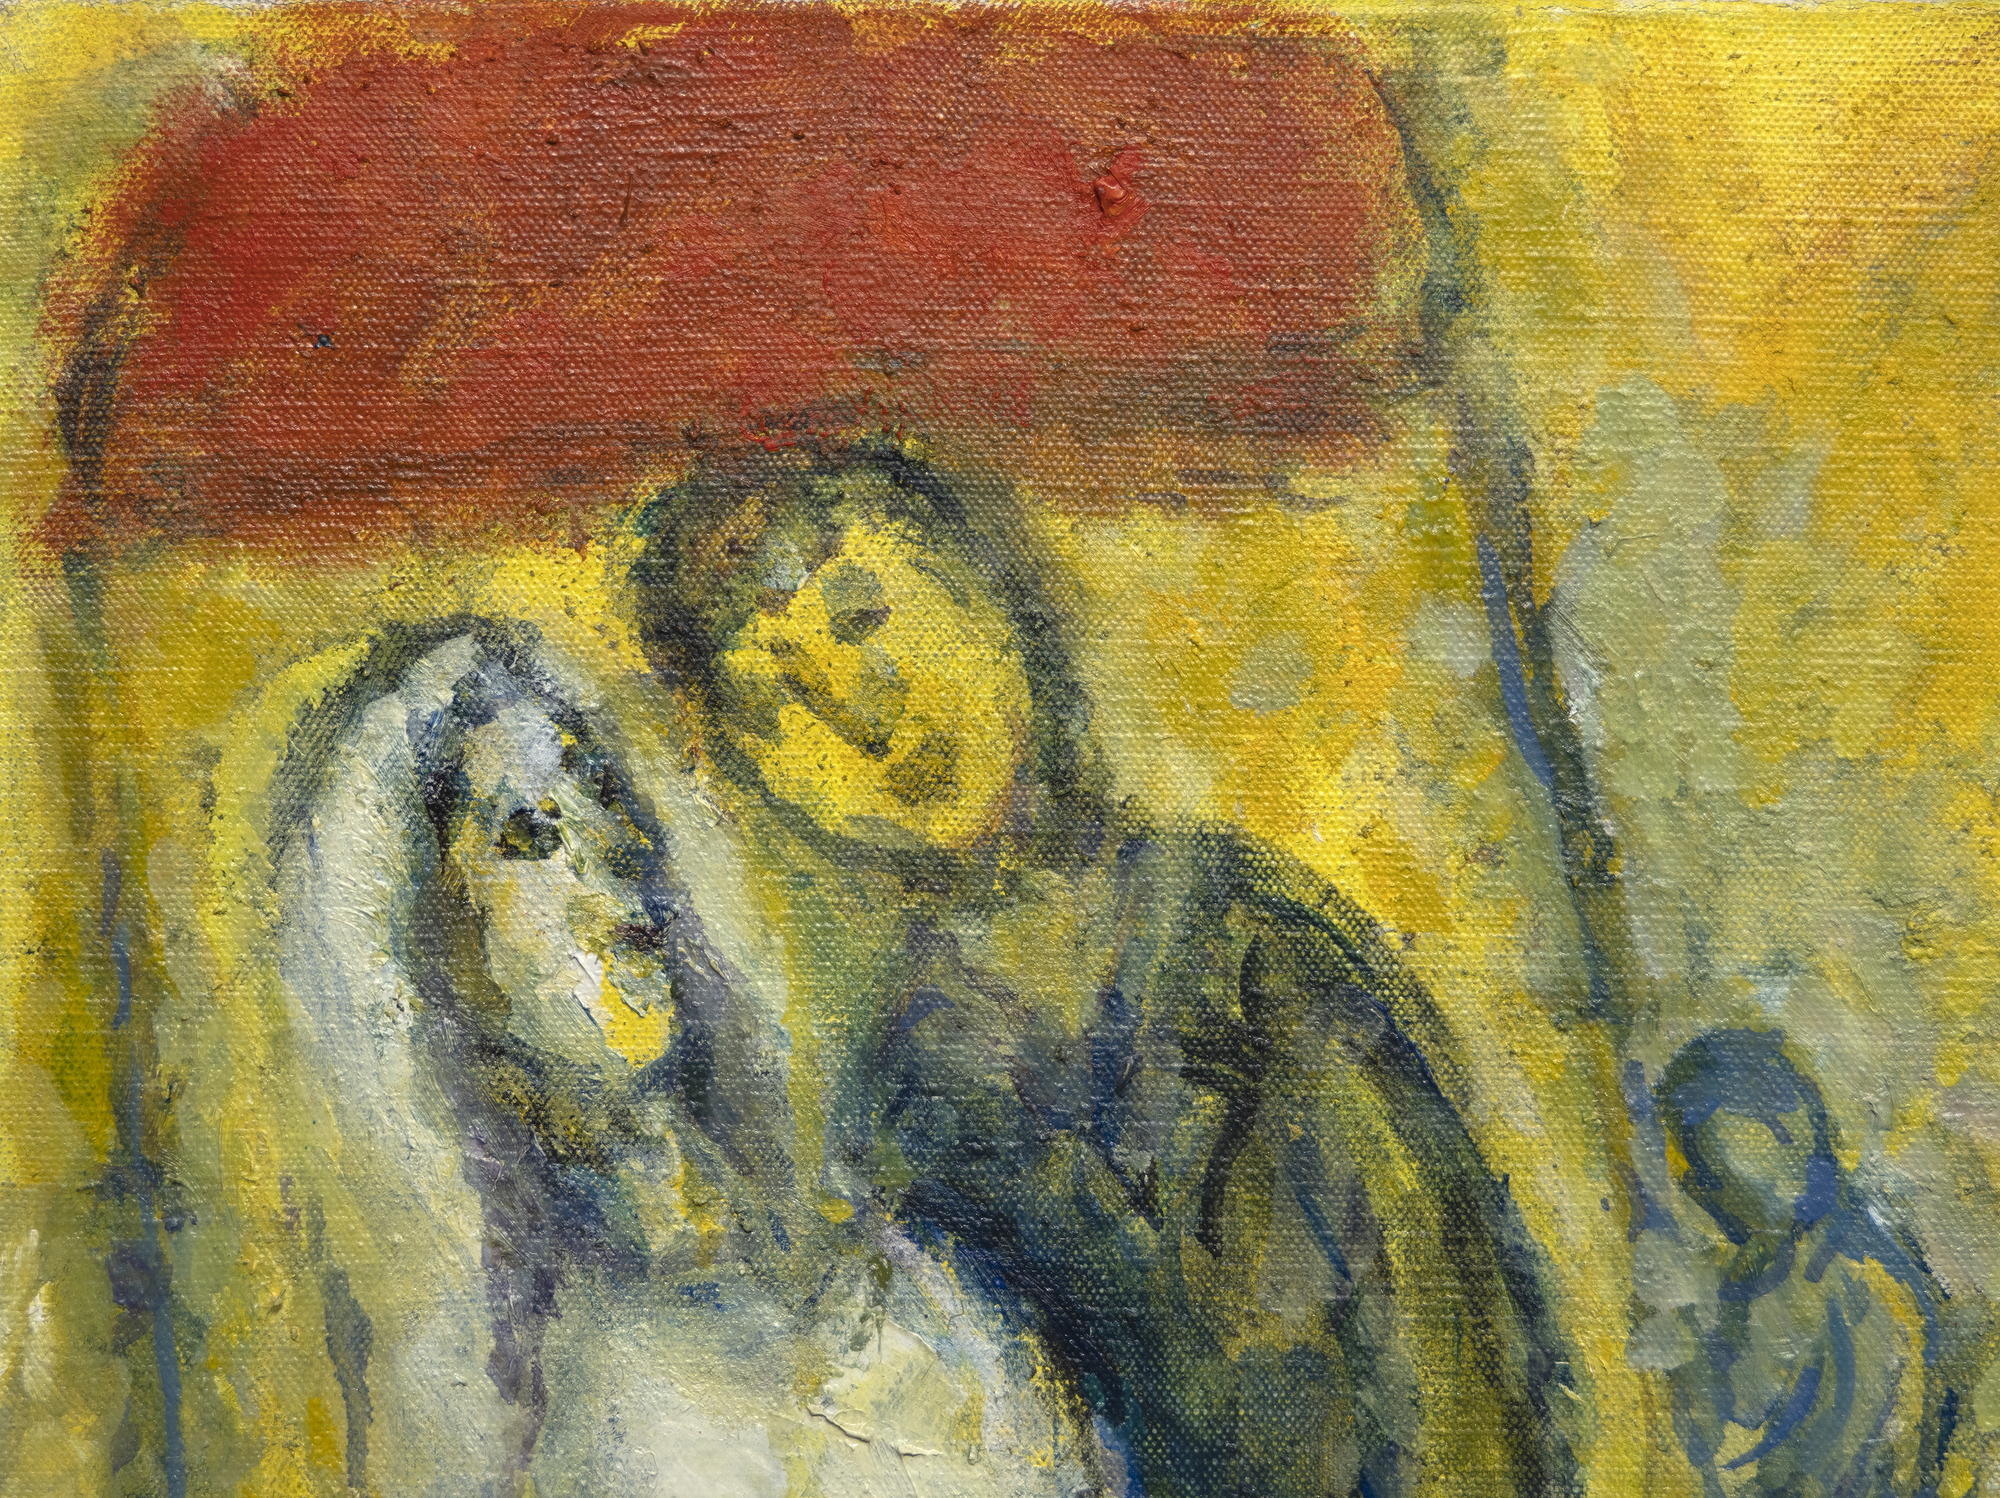 Le monde de Marc Chagall ne peut être contenu ou limité par les étiquettes que nous lui attachons. C'est un monde d'images et de significations qui forment leur propre discours splendidement mystique. Les Mariés sous le baldaquin a été entrepris alors que l'artiste entrait dans sa 90e année, un homme qui avait connu la tragédie et le conflit, mais qui n'avait jamais oublié les moments de plaisir de la vie. Ici, les délices rêveurs d'un mariage dans un village russe, avec ses arrangements de participants bien rodés, nous sont présentés avec un esprit si joyeux et une innocence si gaie qu'il est impossible de résister à son charme. En utilisant une émulsion dorée combinant l'huile et la gouache opaque à base d'eau, la chaleur, le bonheur et l'optimisme du positivisme habituel de Chagall sont enveloppés d'un éclat lumineux suggérant l'influence des icônes religieuses à feuilles d'or ou de la peinture du début de la Renaissance qui cherchait à donner l'impression d'une lumière divine ou d'une illumination spirituelle. L'utilisation d'une combinaison d'huile et de gouache peut s'avérer difficile. Mais ici, dans Les Mariés sous le baldaquin, Chagall l'utilise pour donner à la scène une qualité d'un autre monde, presque comme si elle venait de se matérialiser à partir de l'œil de son esprit. La finesse de sa texture donne l'impression que la lumière émane de l'œuvre elle-même et confère une qualité spectrale aux personnages qui flottent dans le ciel.